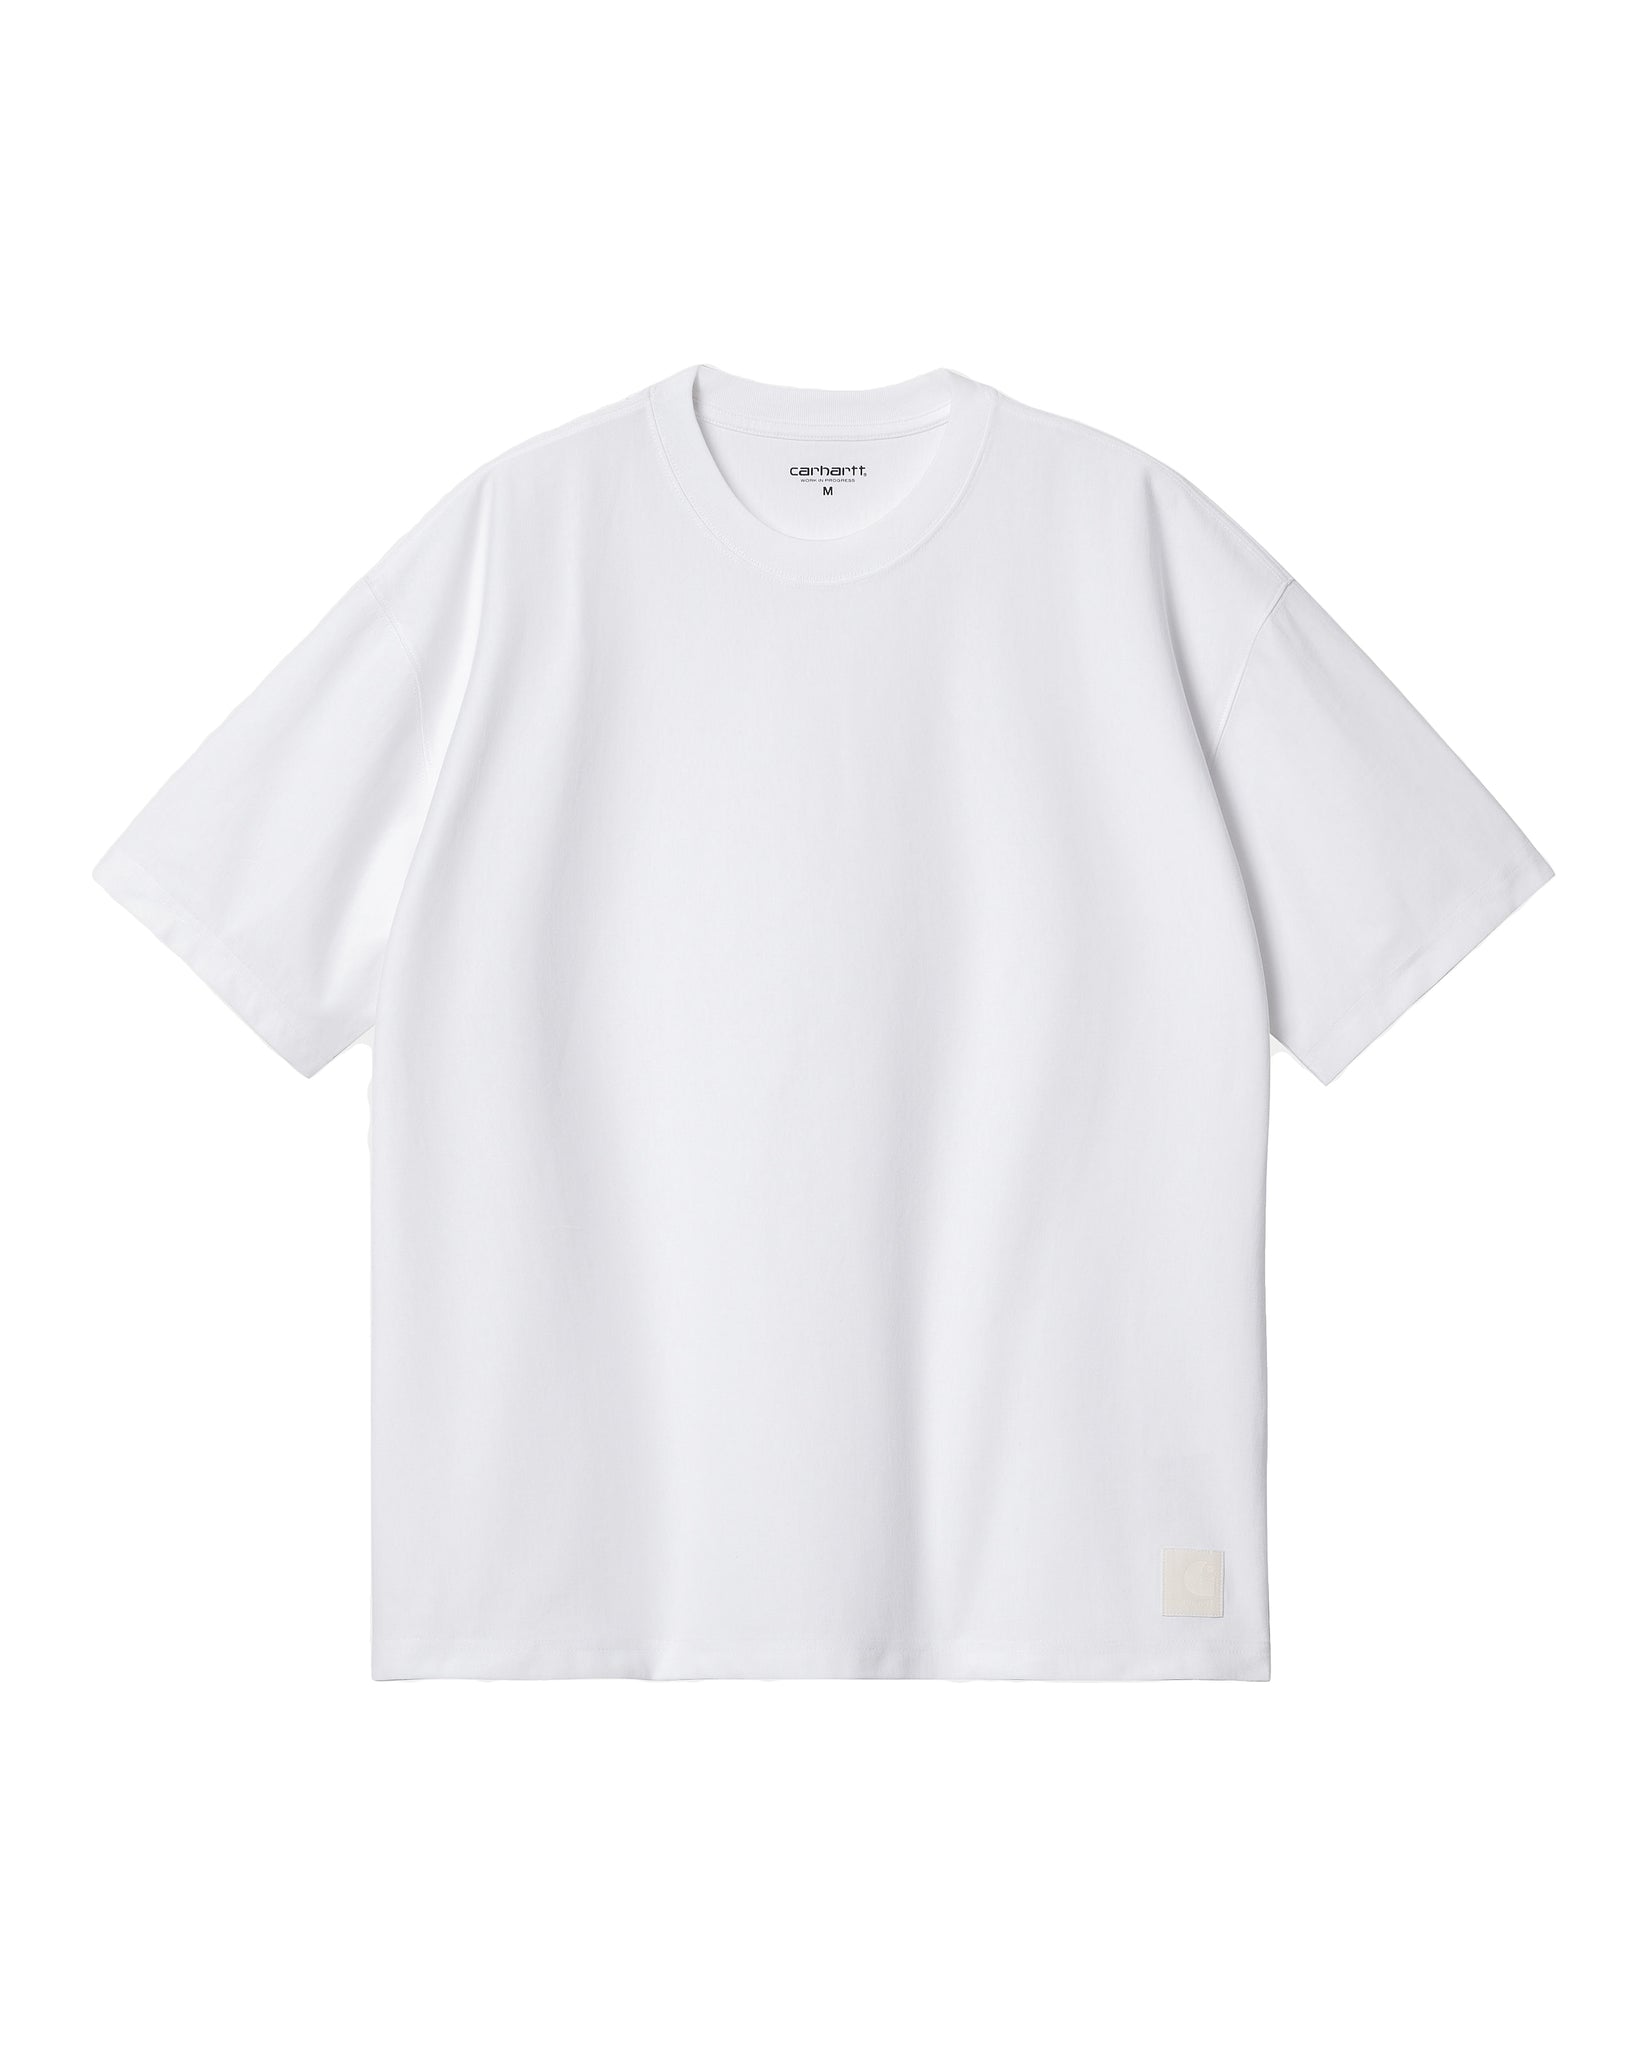 SS Dawson T-Shirt - White